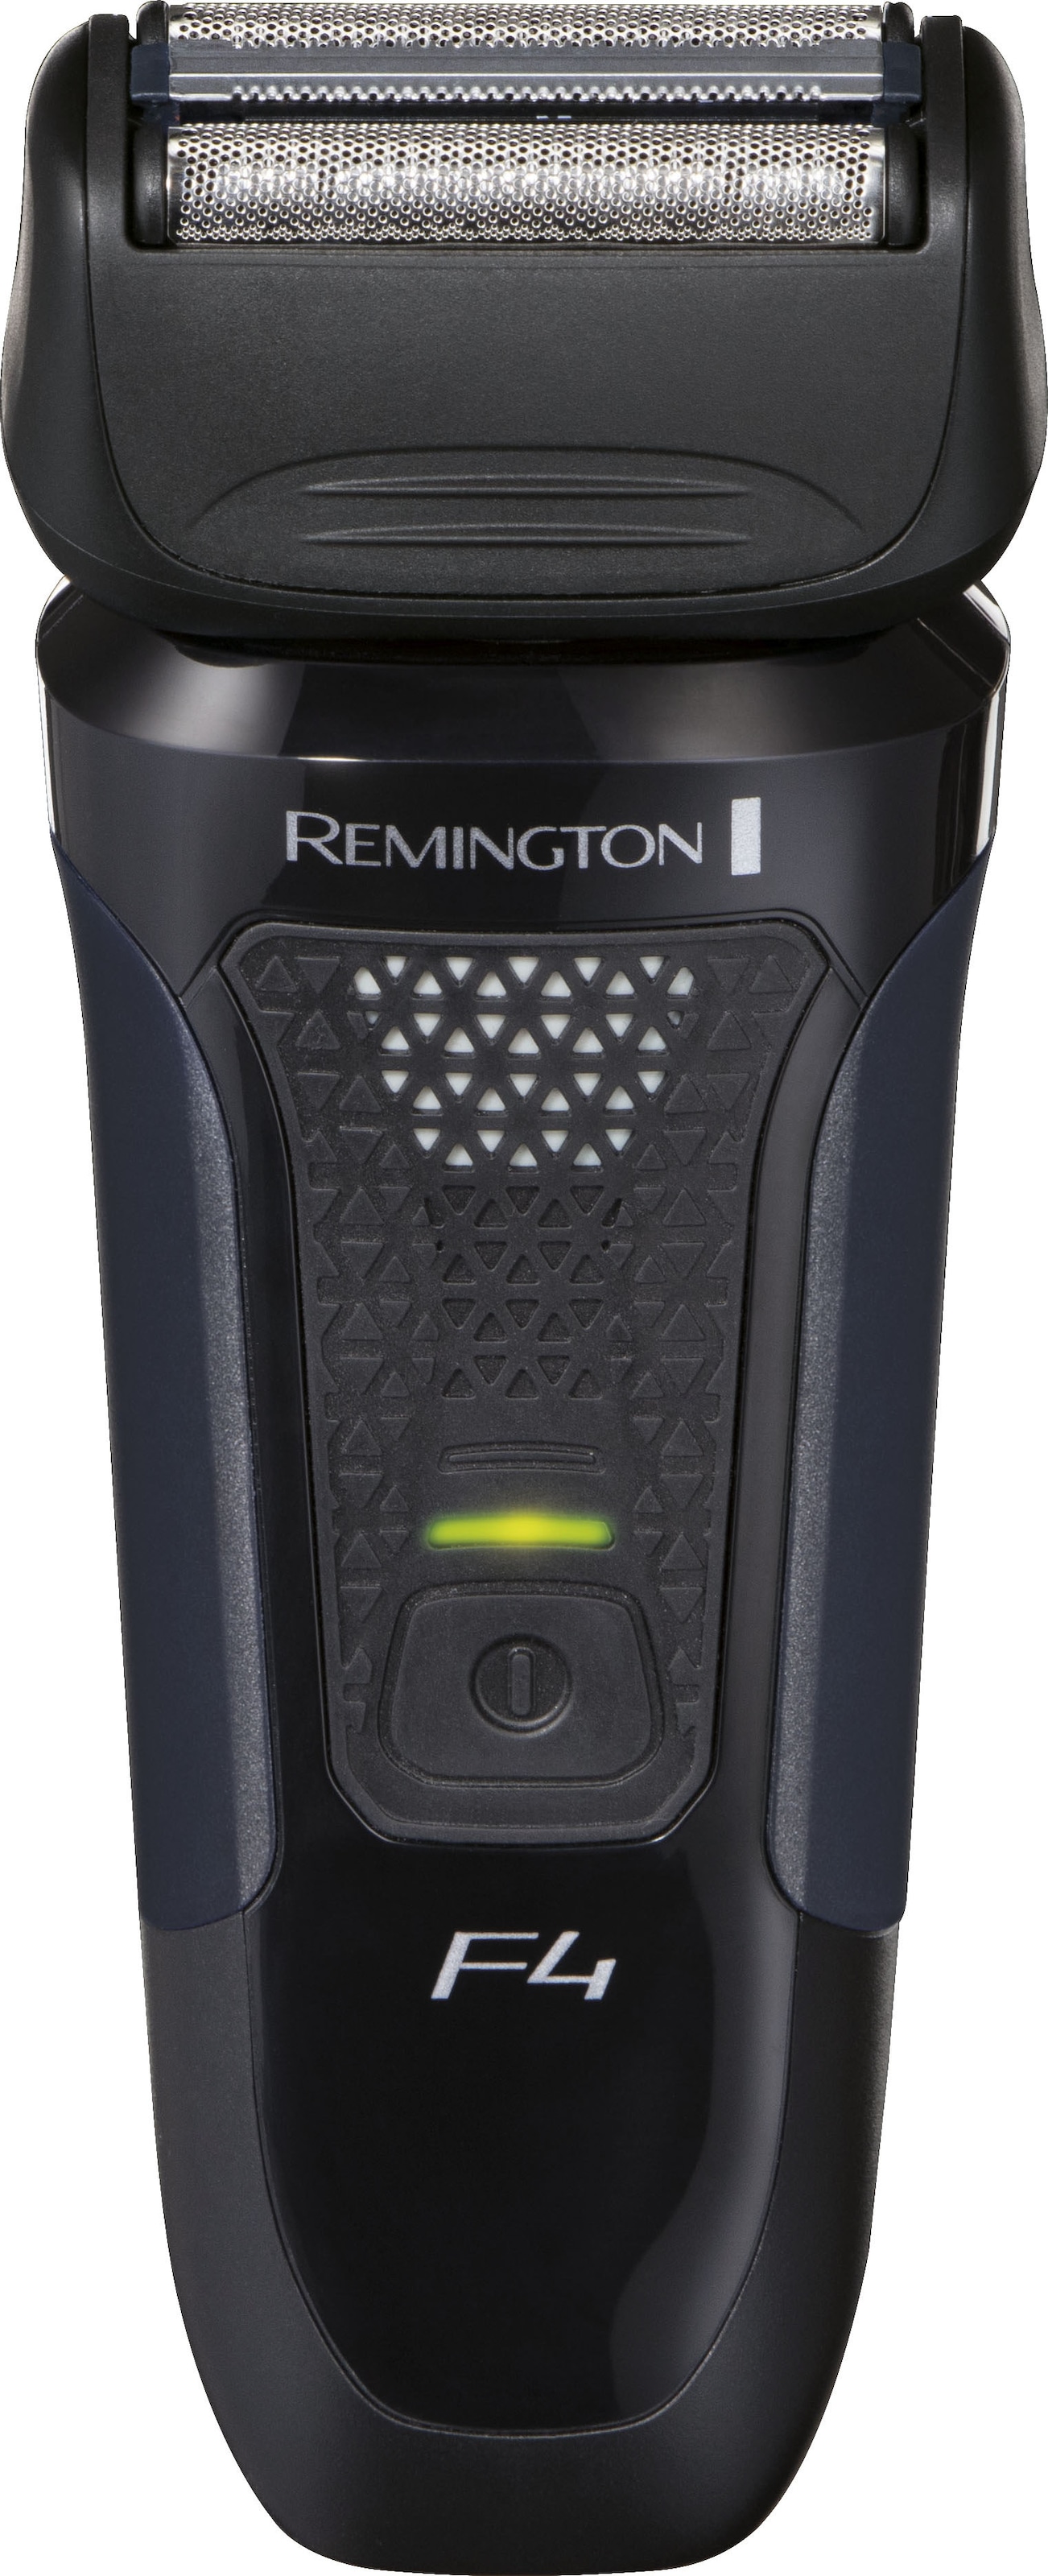 Remington Elektrorasierer »F4002 Style Series Foil Shaver F4«, 1 St. Aufsätze, integrierter Präzisionstrimmer, +3-Tage Bart-Aufsatz/Schutzkappe, Detailschneider, 100% wasserdicht